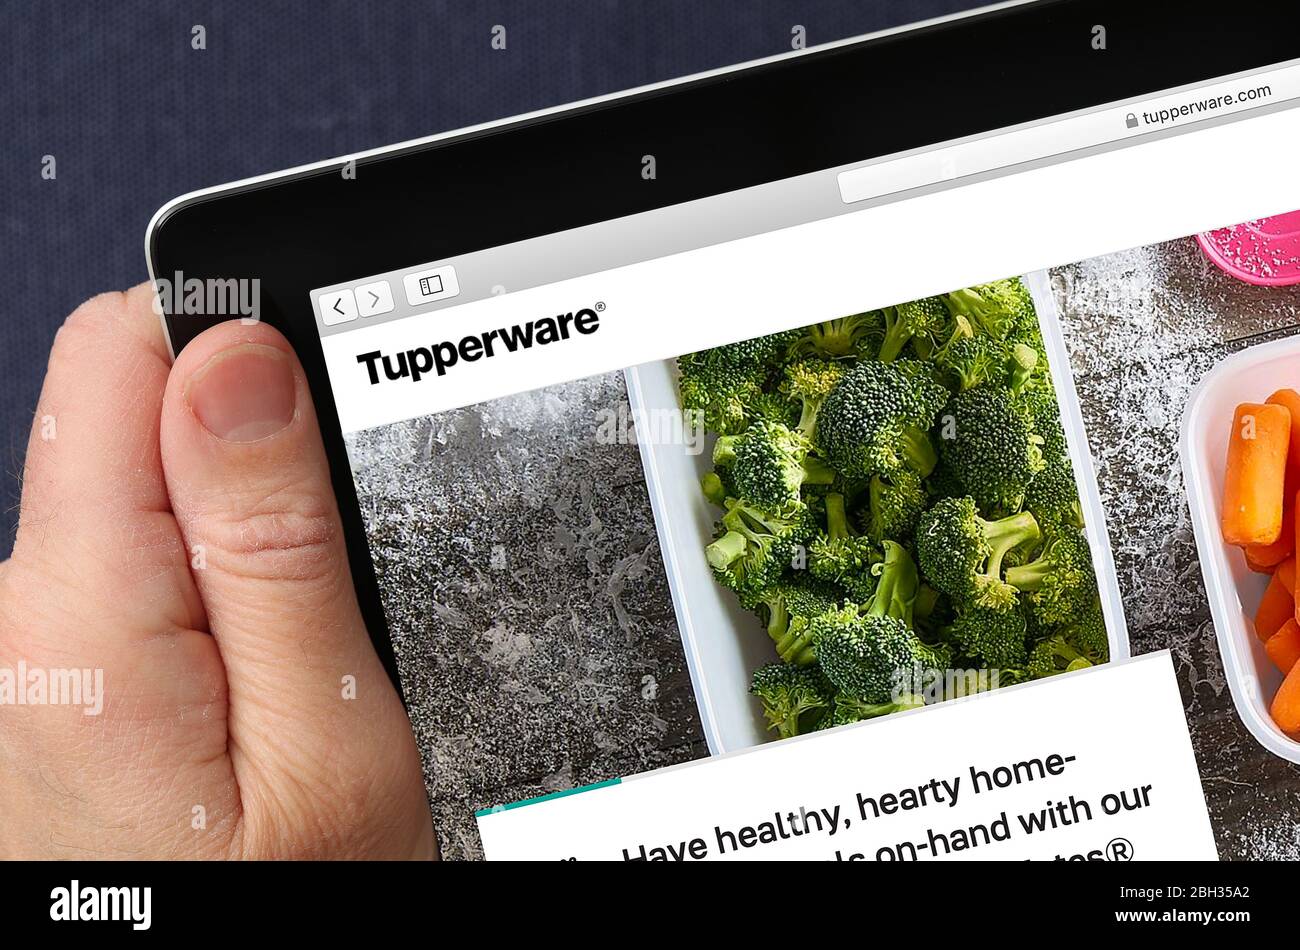 Tupperware-Website auf einem iPad angesehen (nur redaktionelle Verwendung) Stockfoto